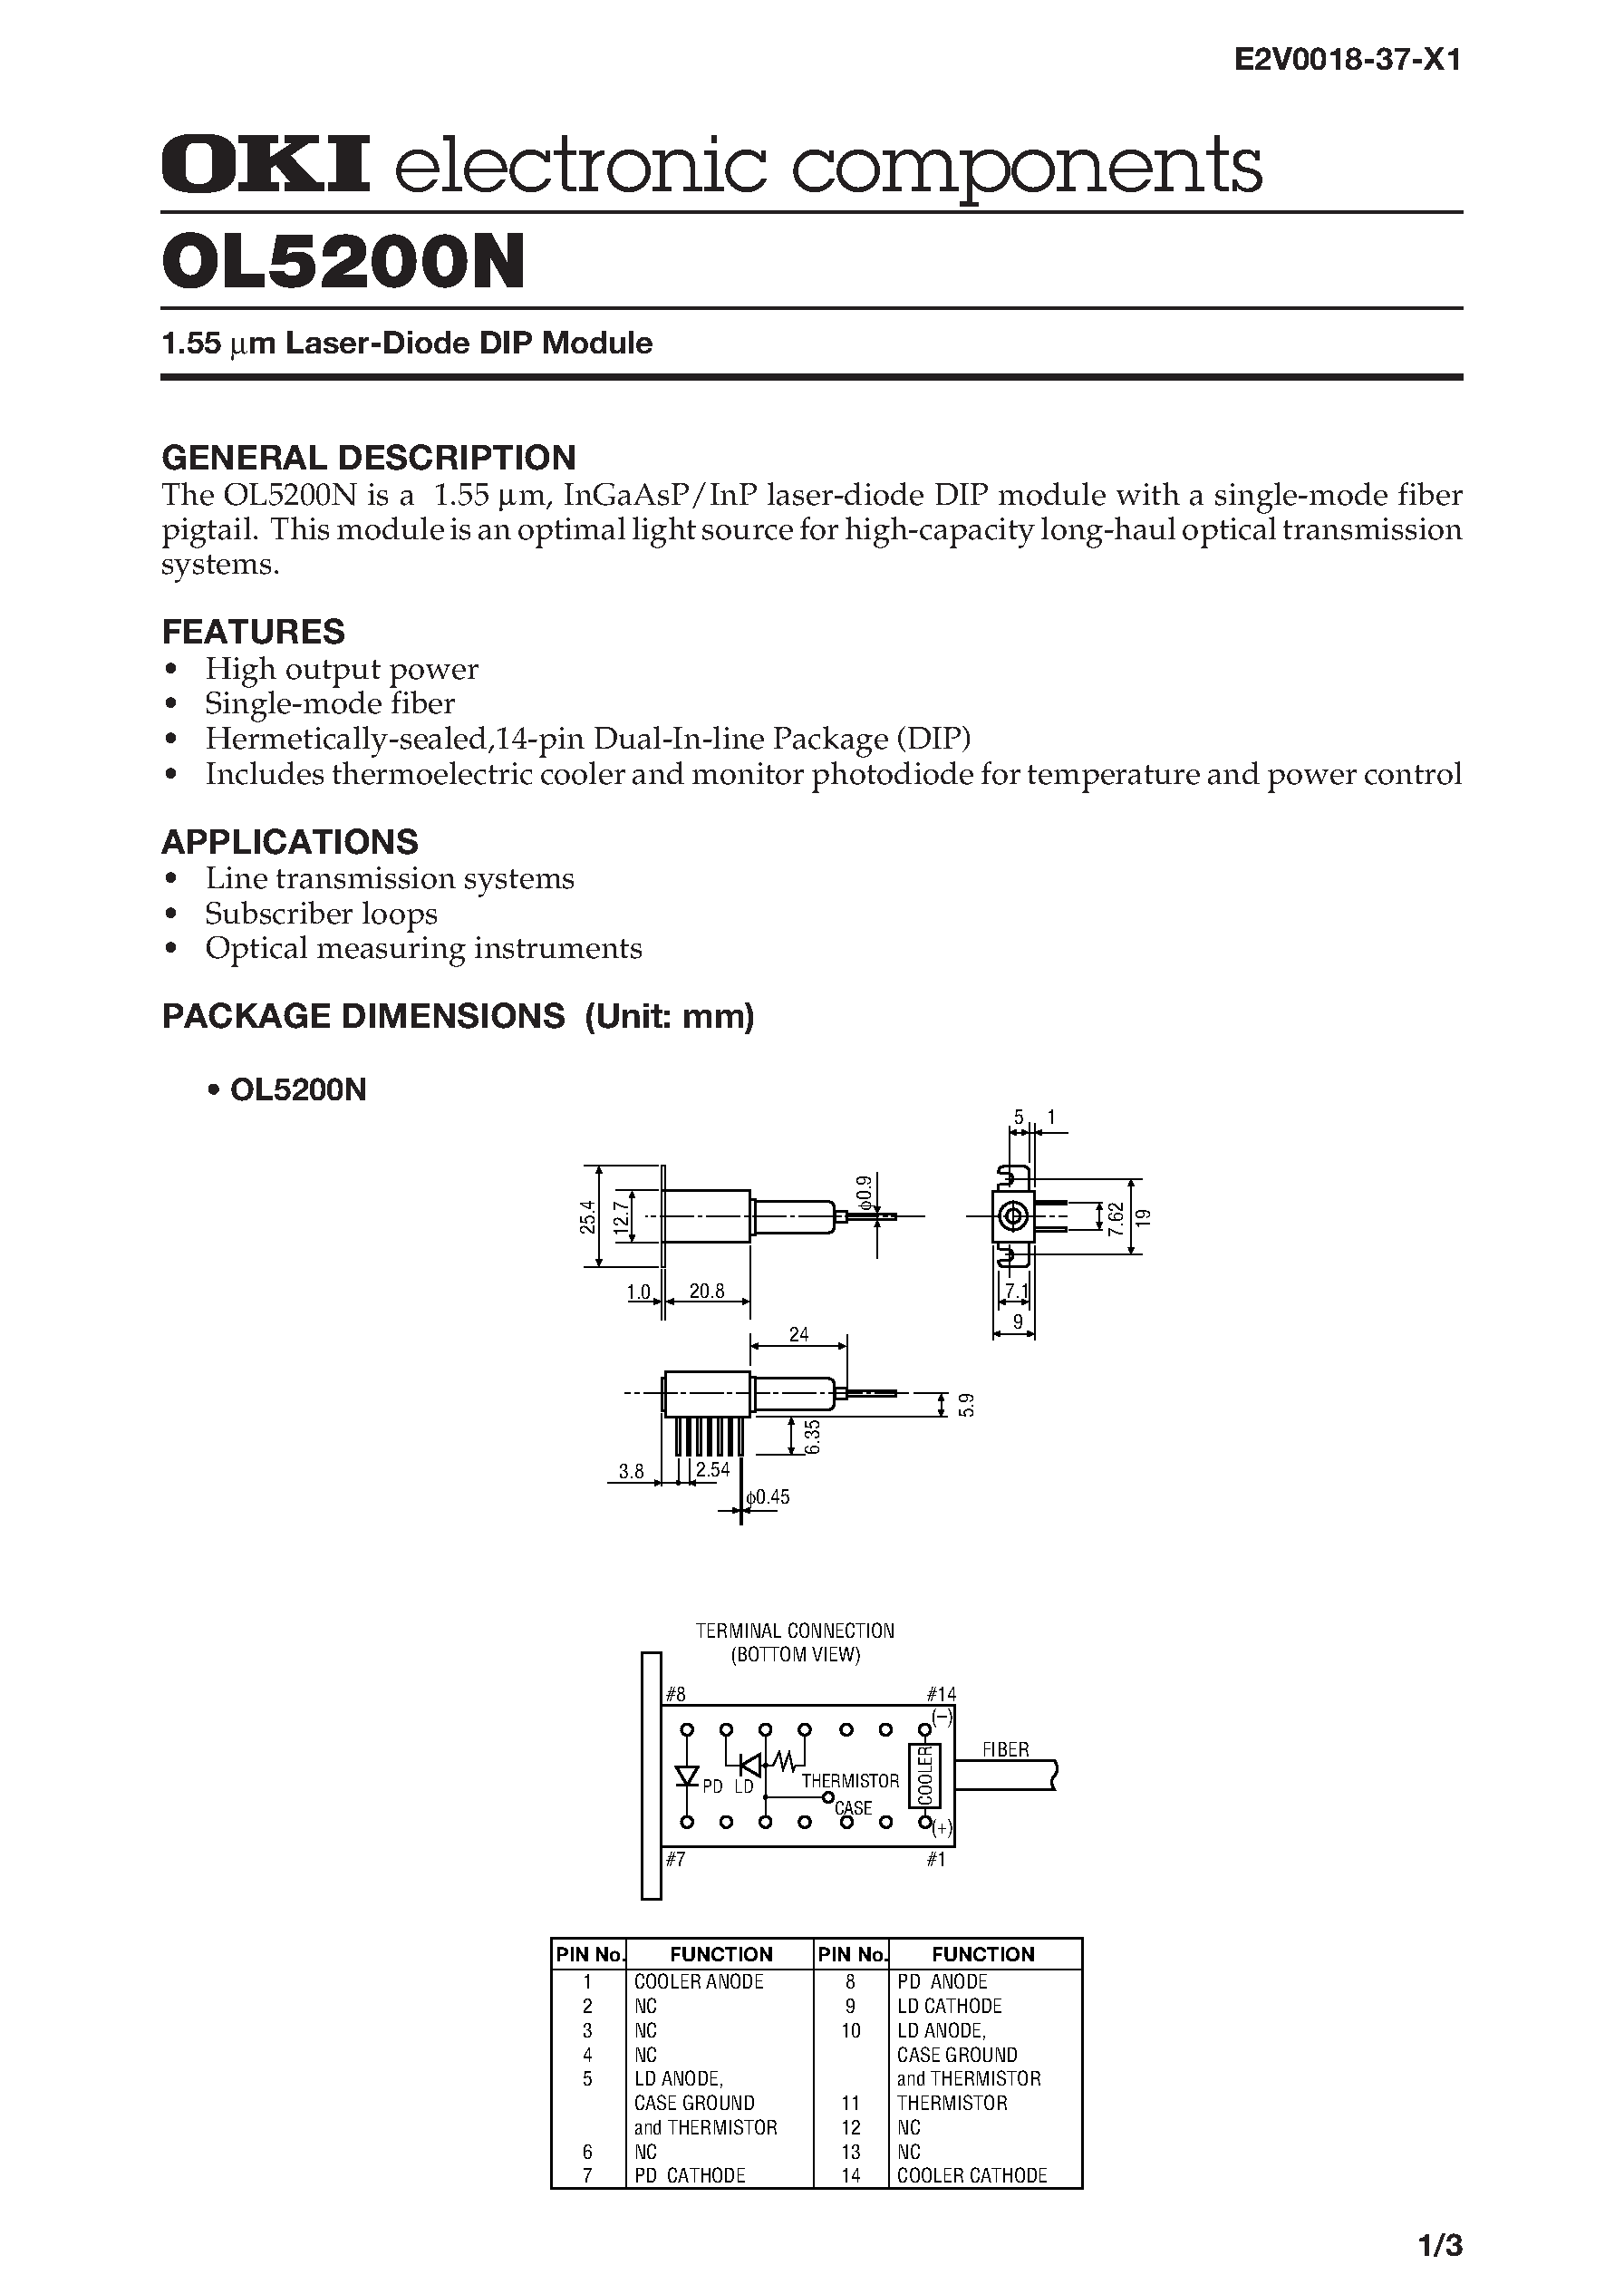 Datasheet OL5200N - 1.55 m Laser-Diode DIP Module page 1